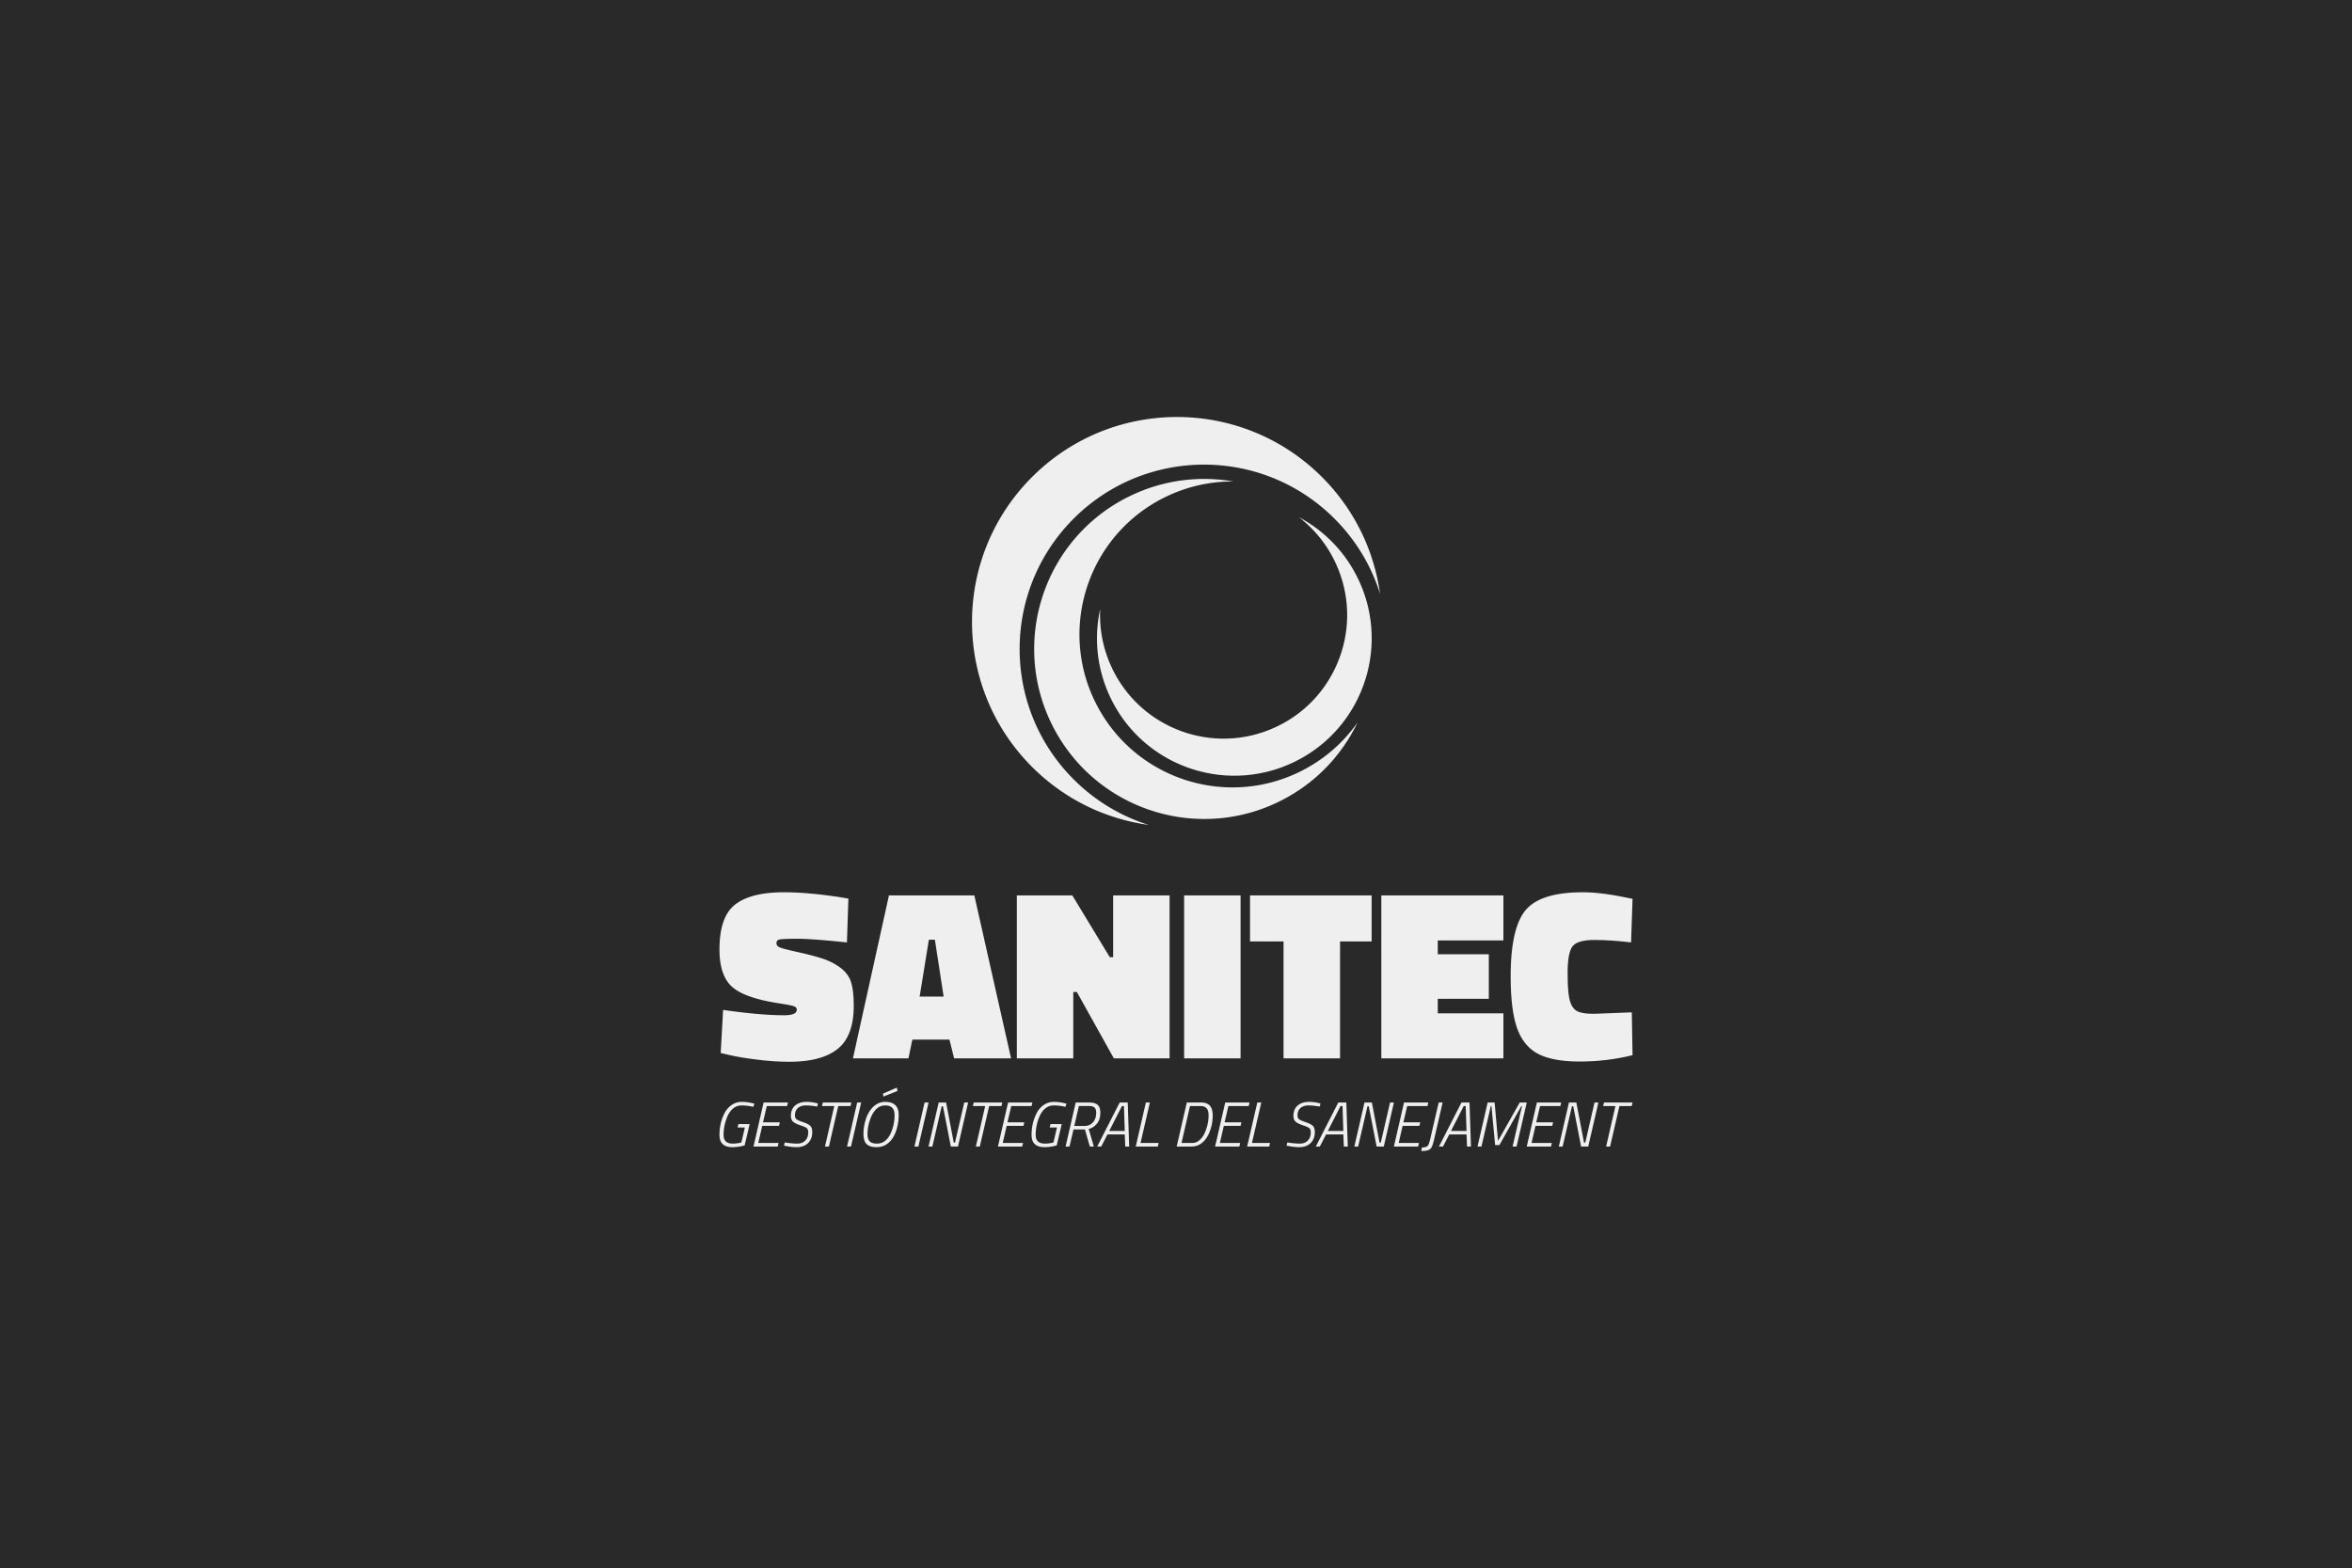 Porta-Disseny-Logos-Sanitec-Gestio-Integral-del-Sanejament-01